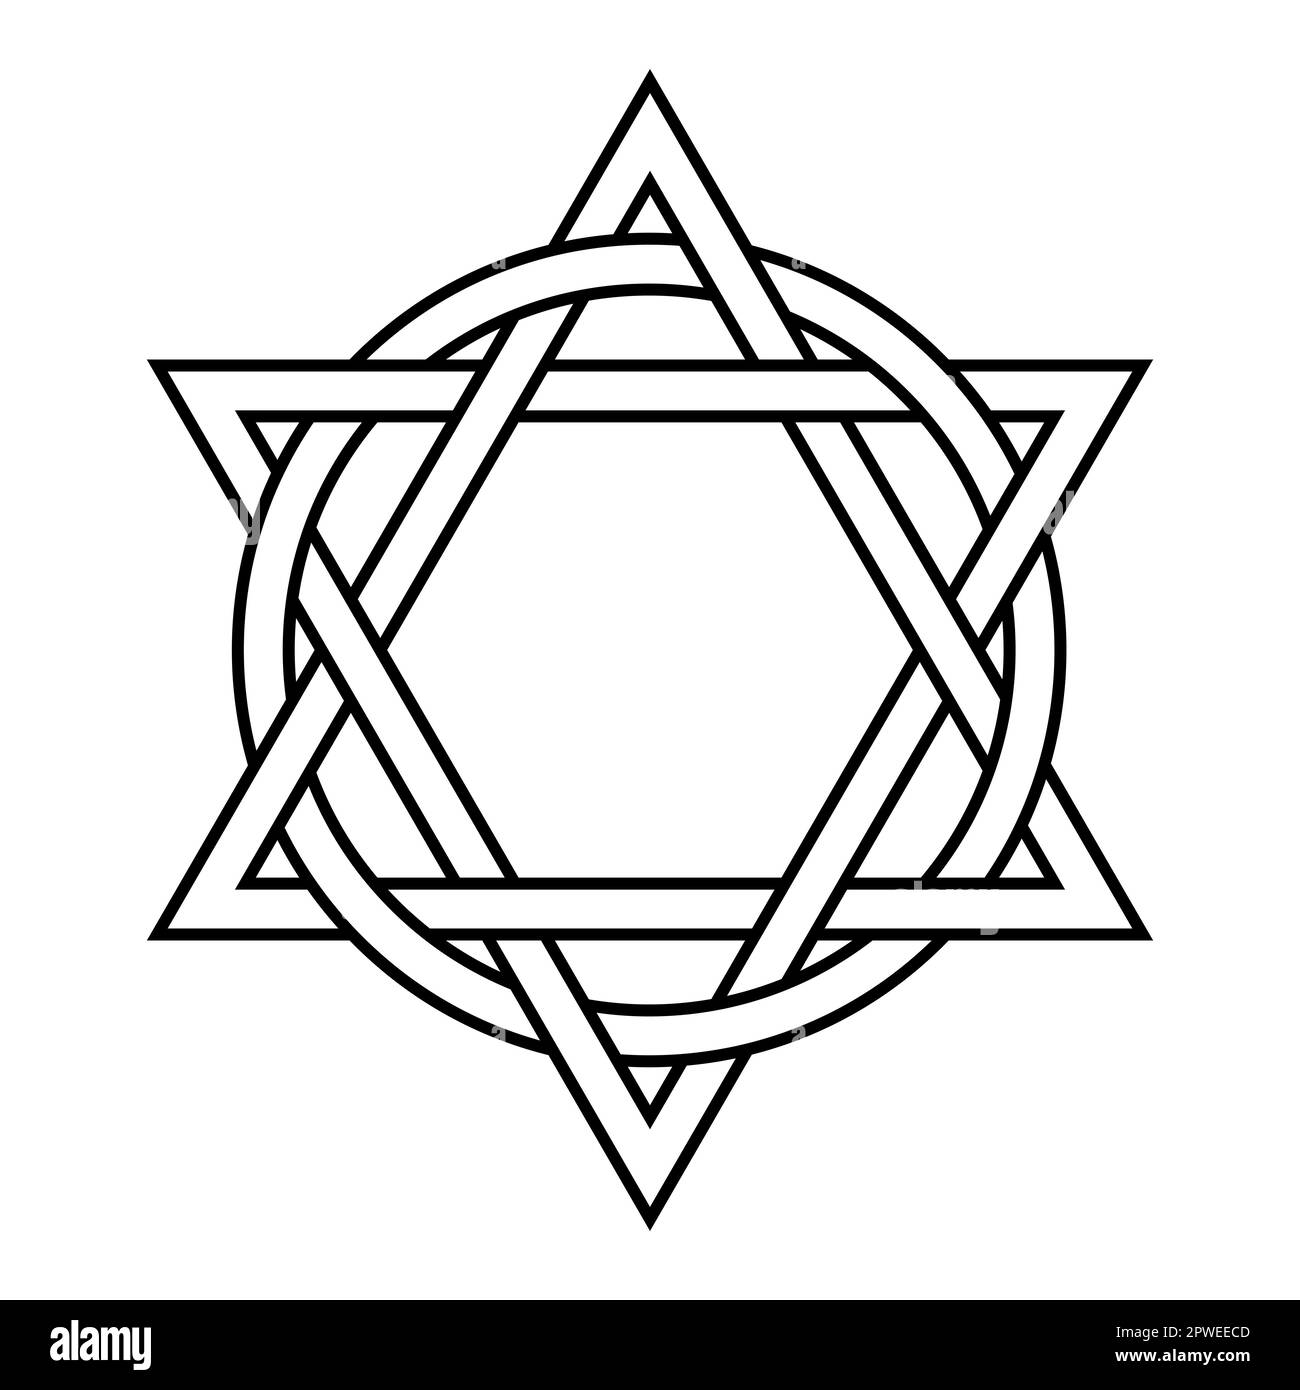 Zwei Dreiecke, die mit einem Kreis verschachtelt sind. Ein antikes christliches Emblem, das die Ewigkeit und die Perfektion der Dreifaltigkeit repräsentiert. Stockfoto